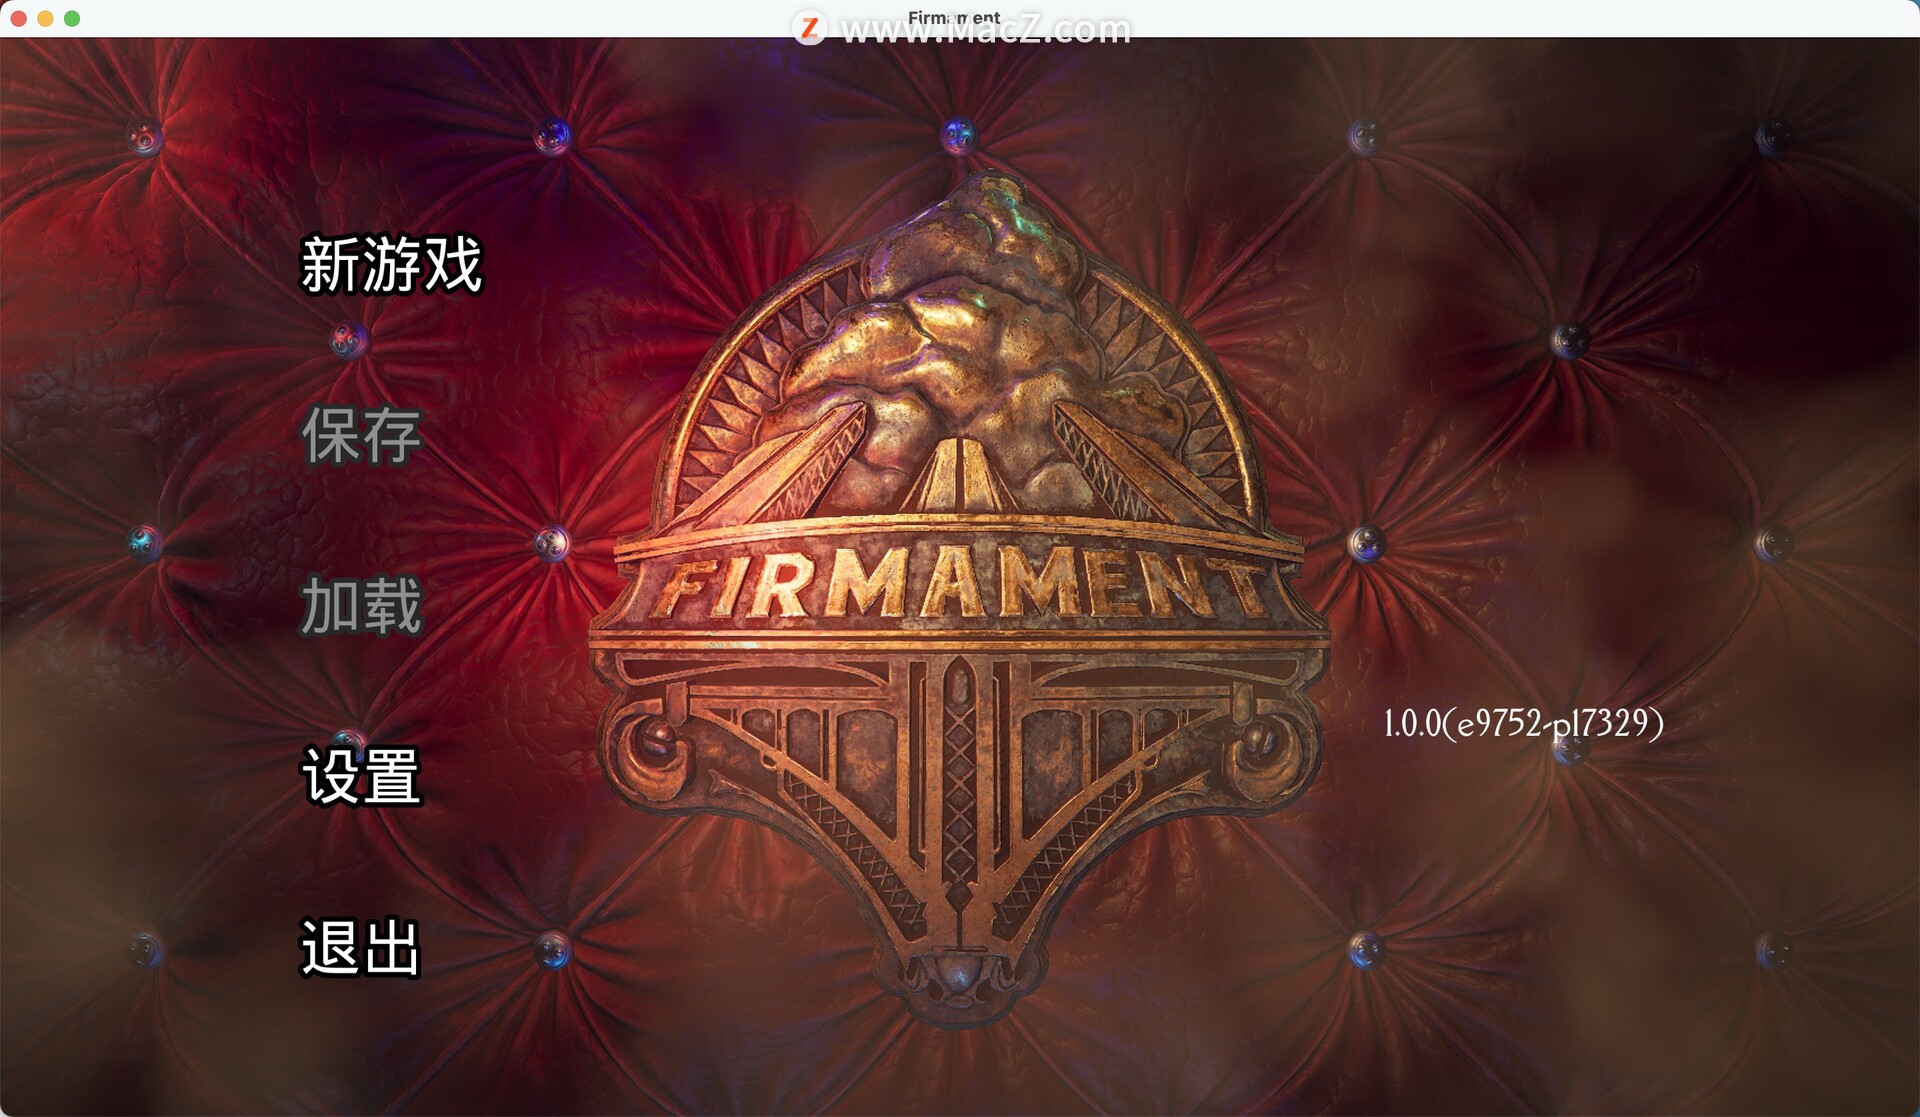 苍穹乾坤Firmament for mac(解谜冒险游戏) 12.47 GB 简体中文